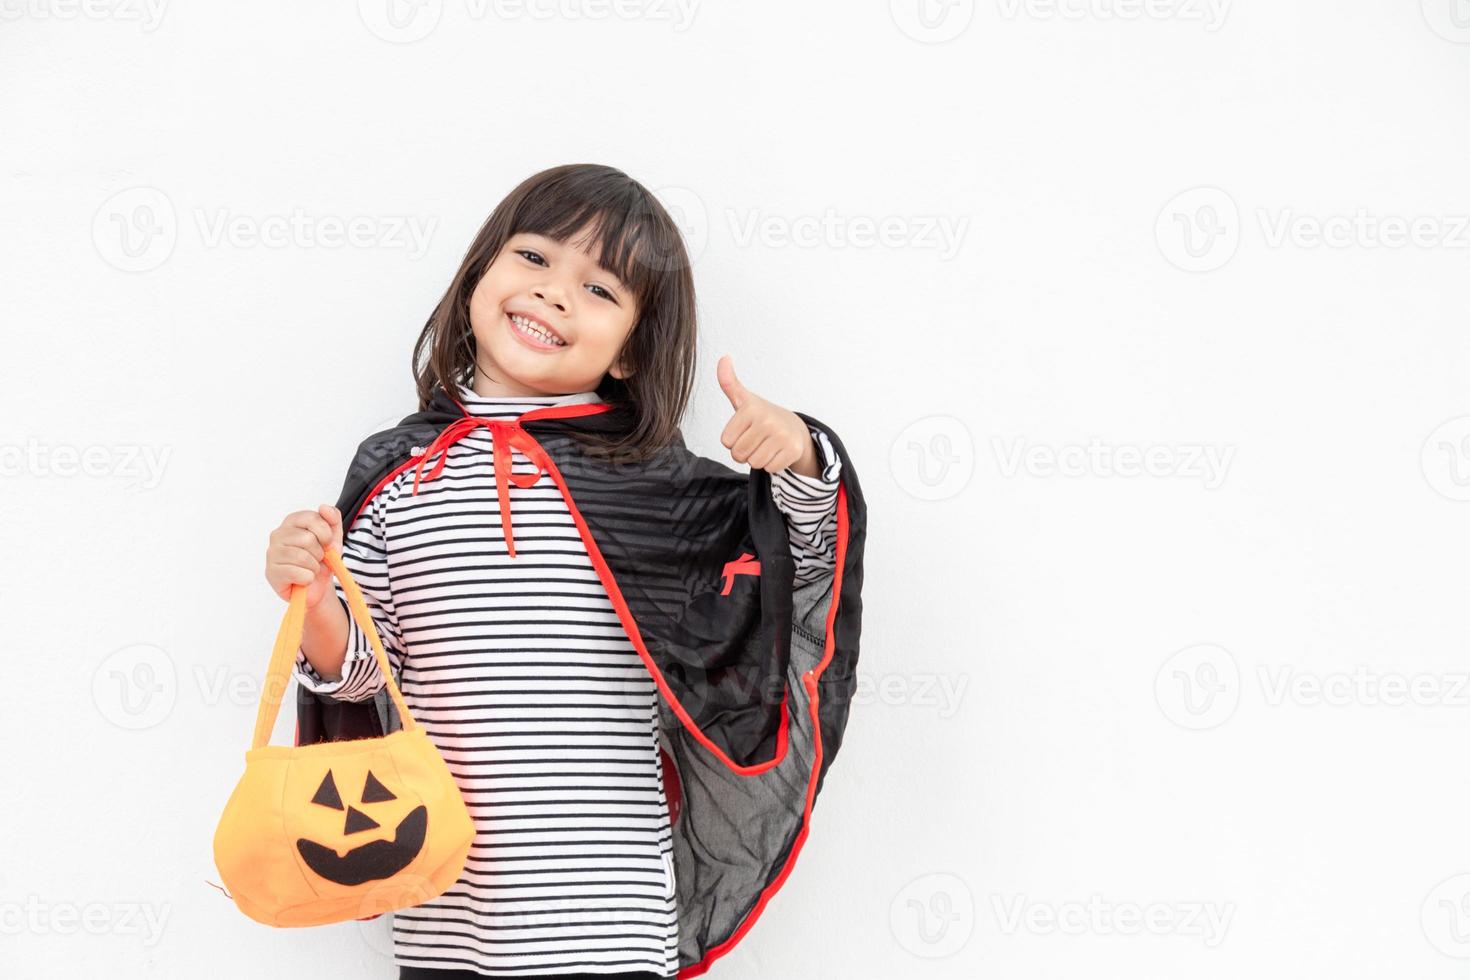 Lustiges Halloween-Kind-Konzept, kleines süßes Mädchen mit Kostüm-Halloween-Geist beängstigend, das er orangefarbenen Kürbis-Geist auf der Hand hält, auf weißem Hintergrund foto